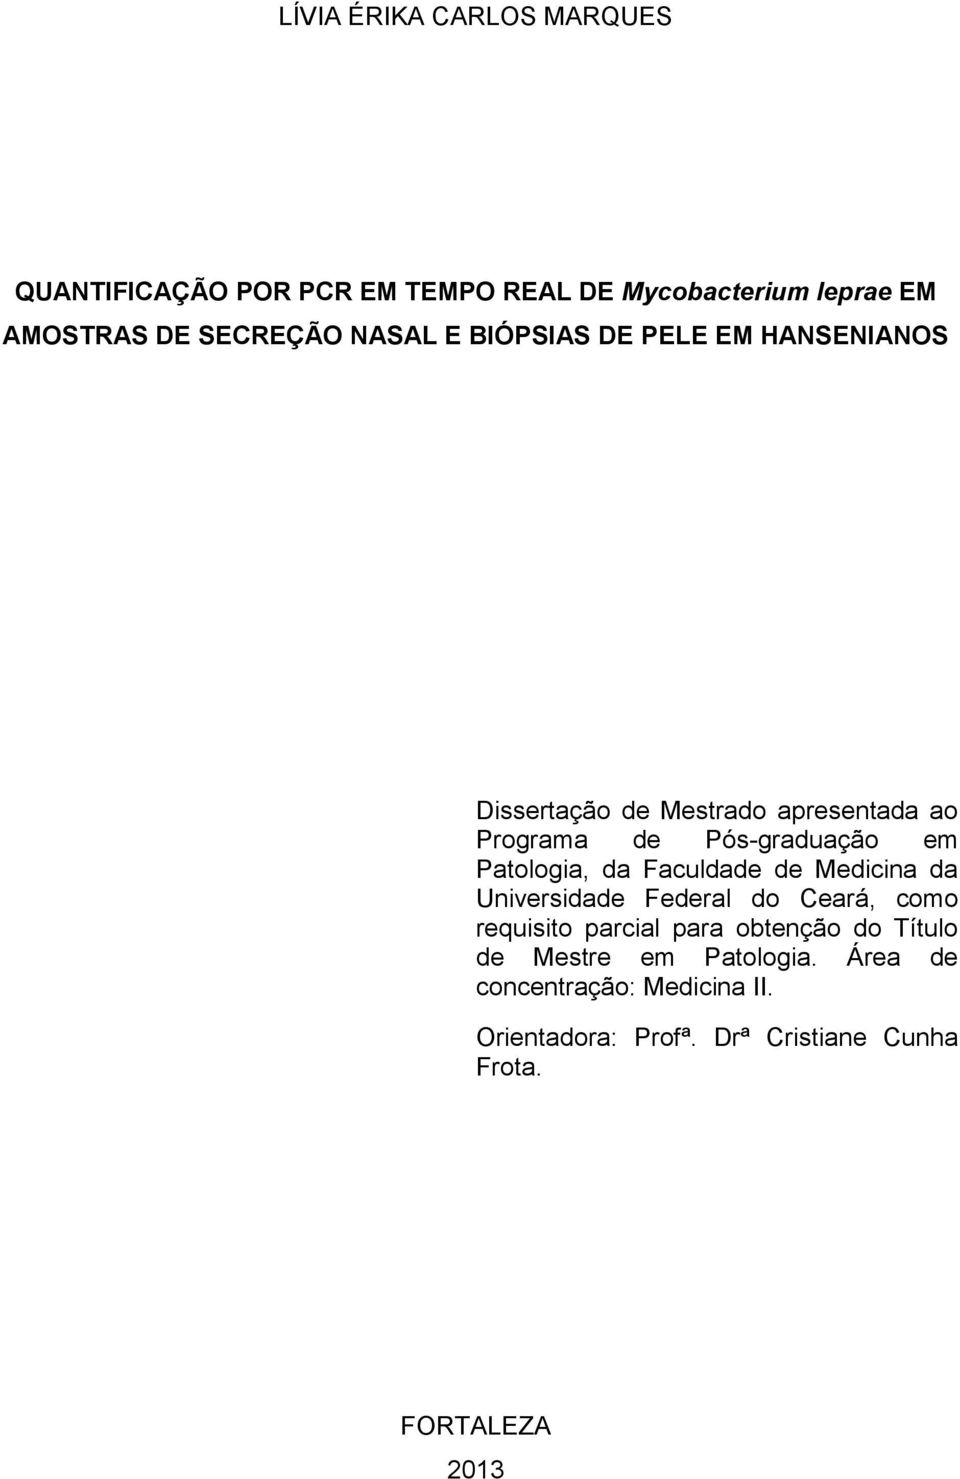 Patologia, da Faculdade de Medicina da Universidade Federal do Ceará, como requisito parcial para obtenção do